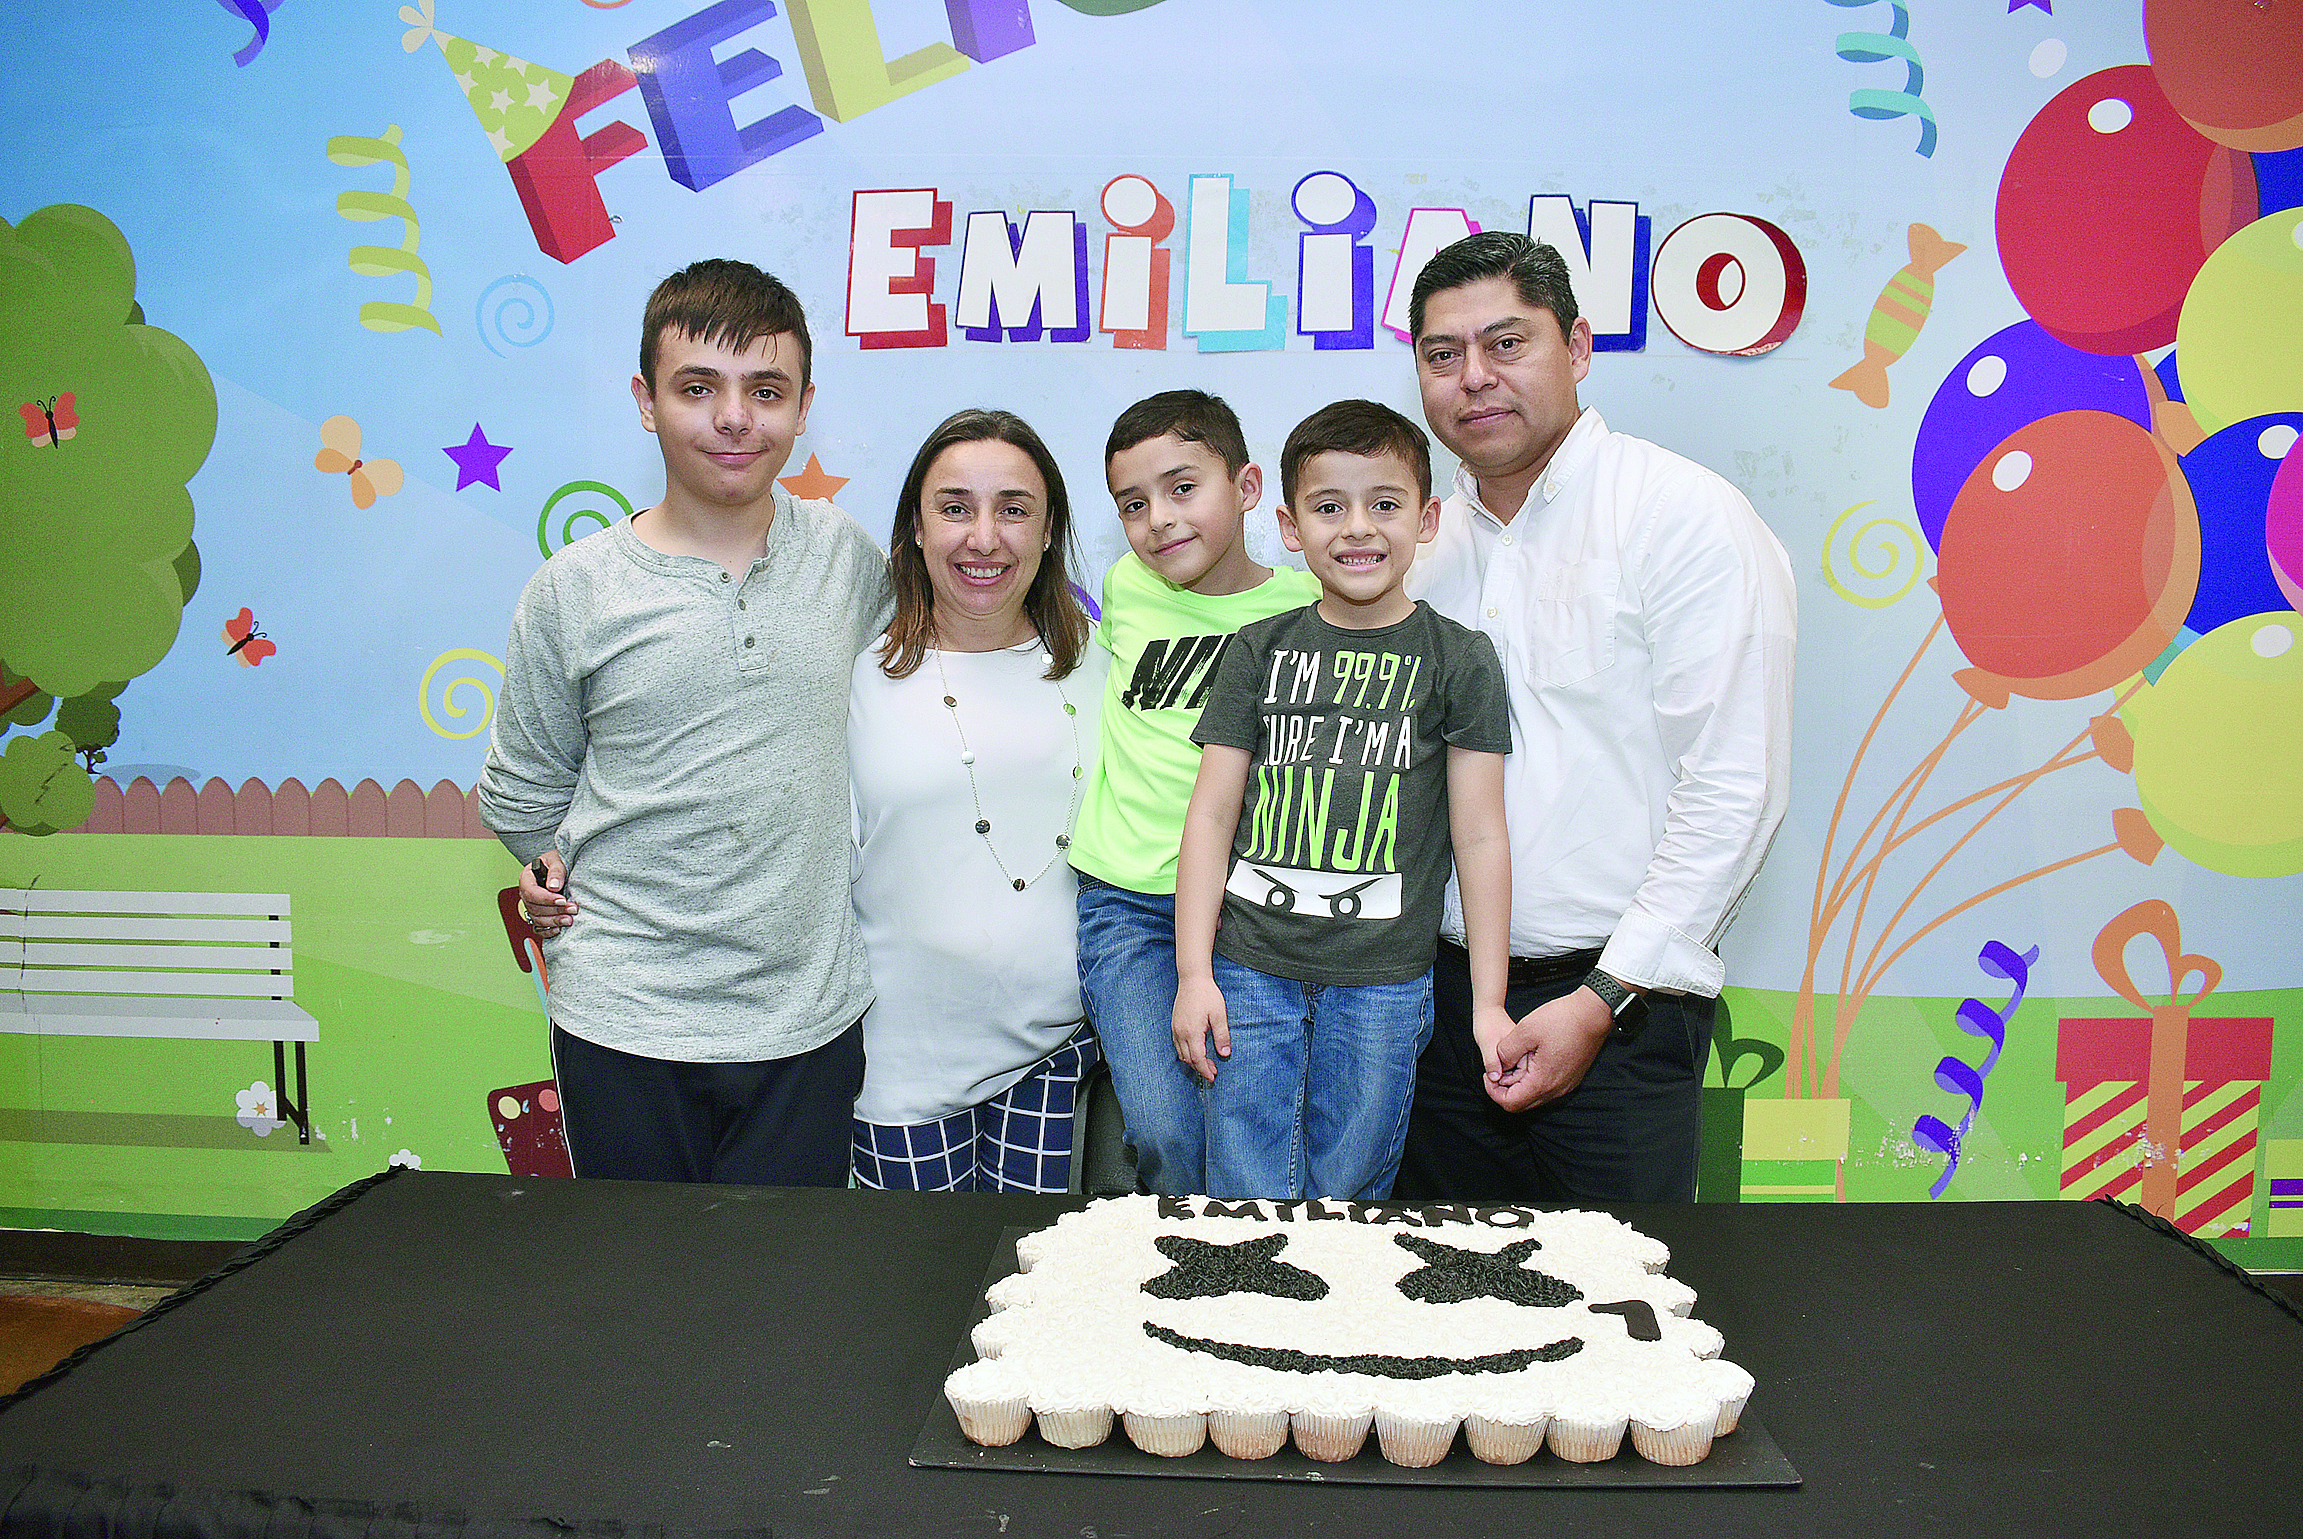 José Emiliano ¡Celebra sus siete años!